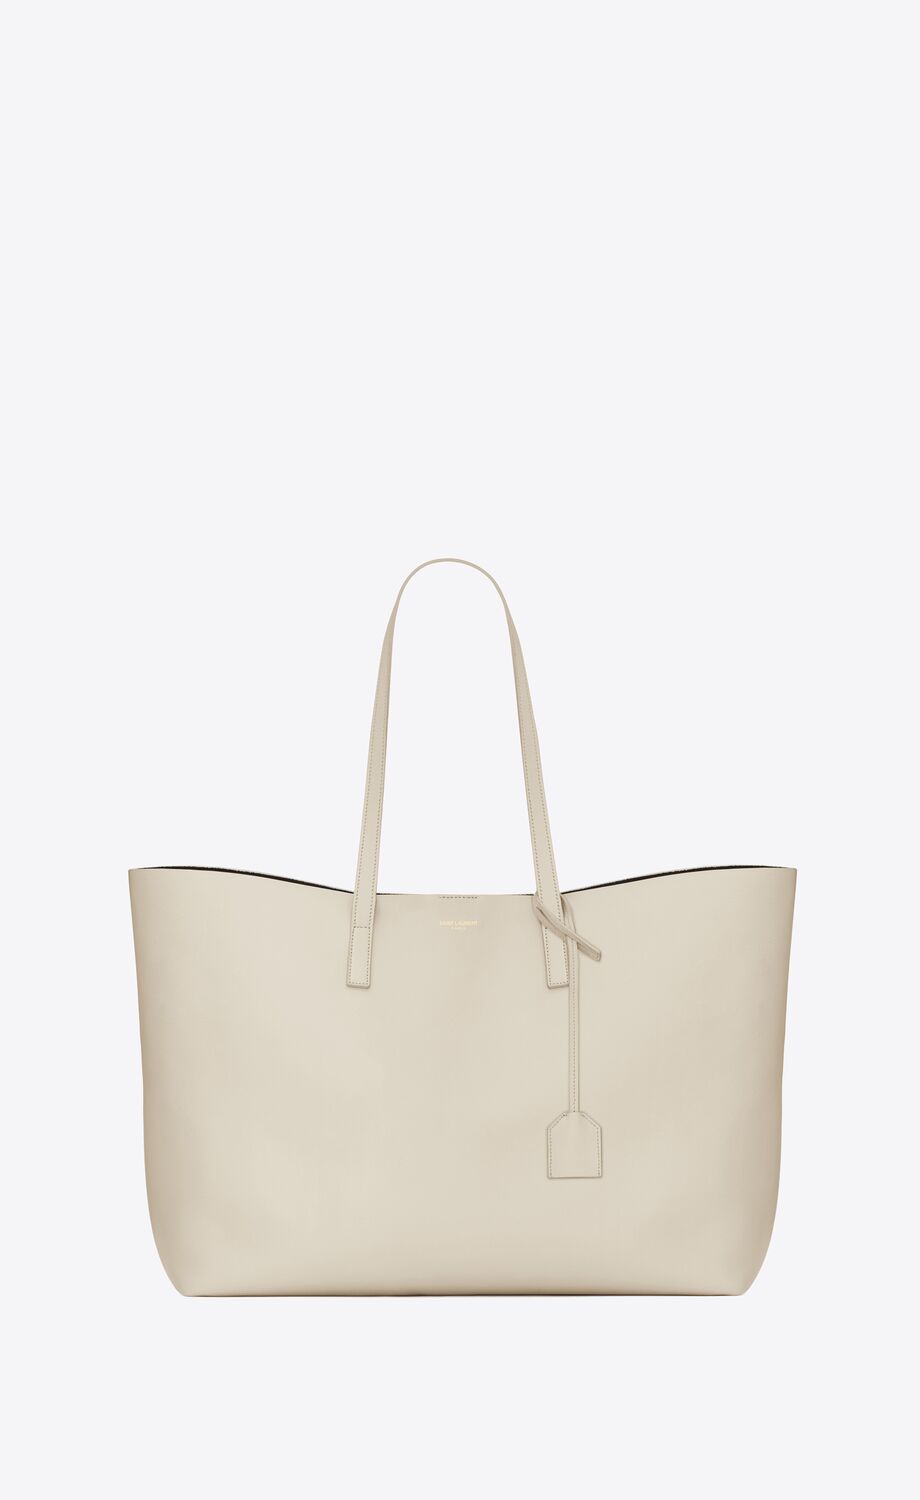 40代に人気の女性バッグを手掛けるハイブランドは、サンローランのショッピング・トート